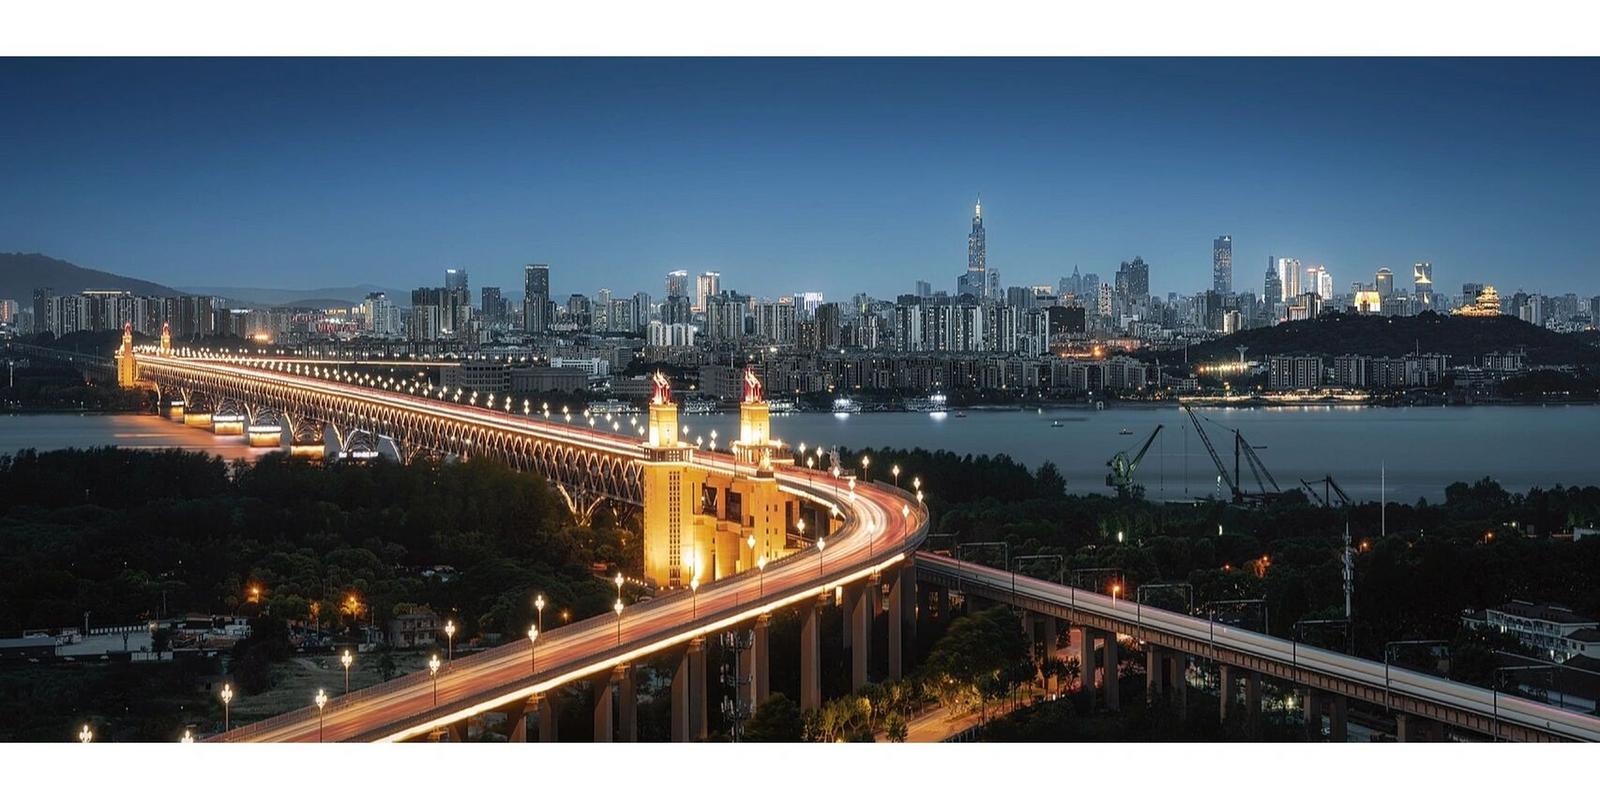 南京|长江大桥 南京长江大桥是长江上第一座由我国自行设计建造的双层